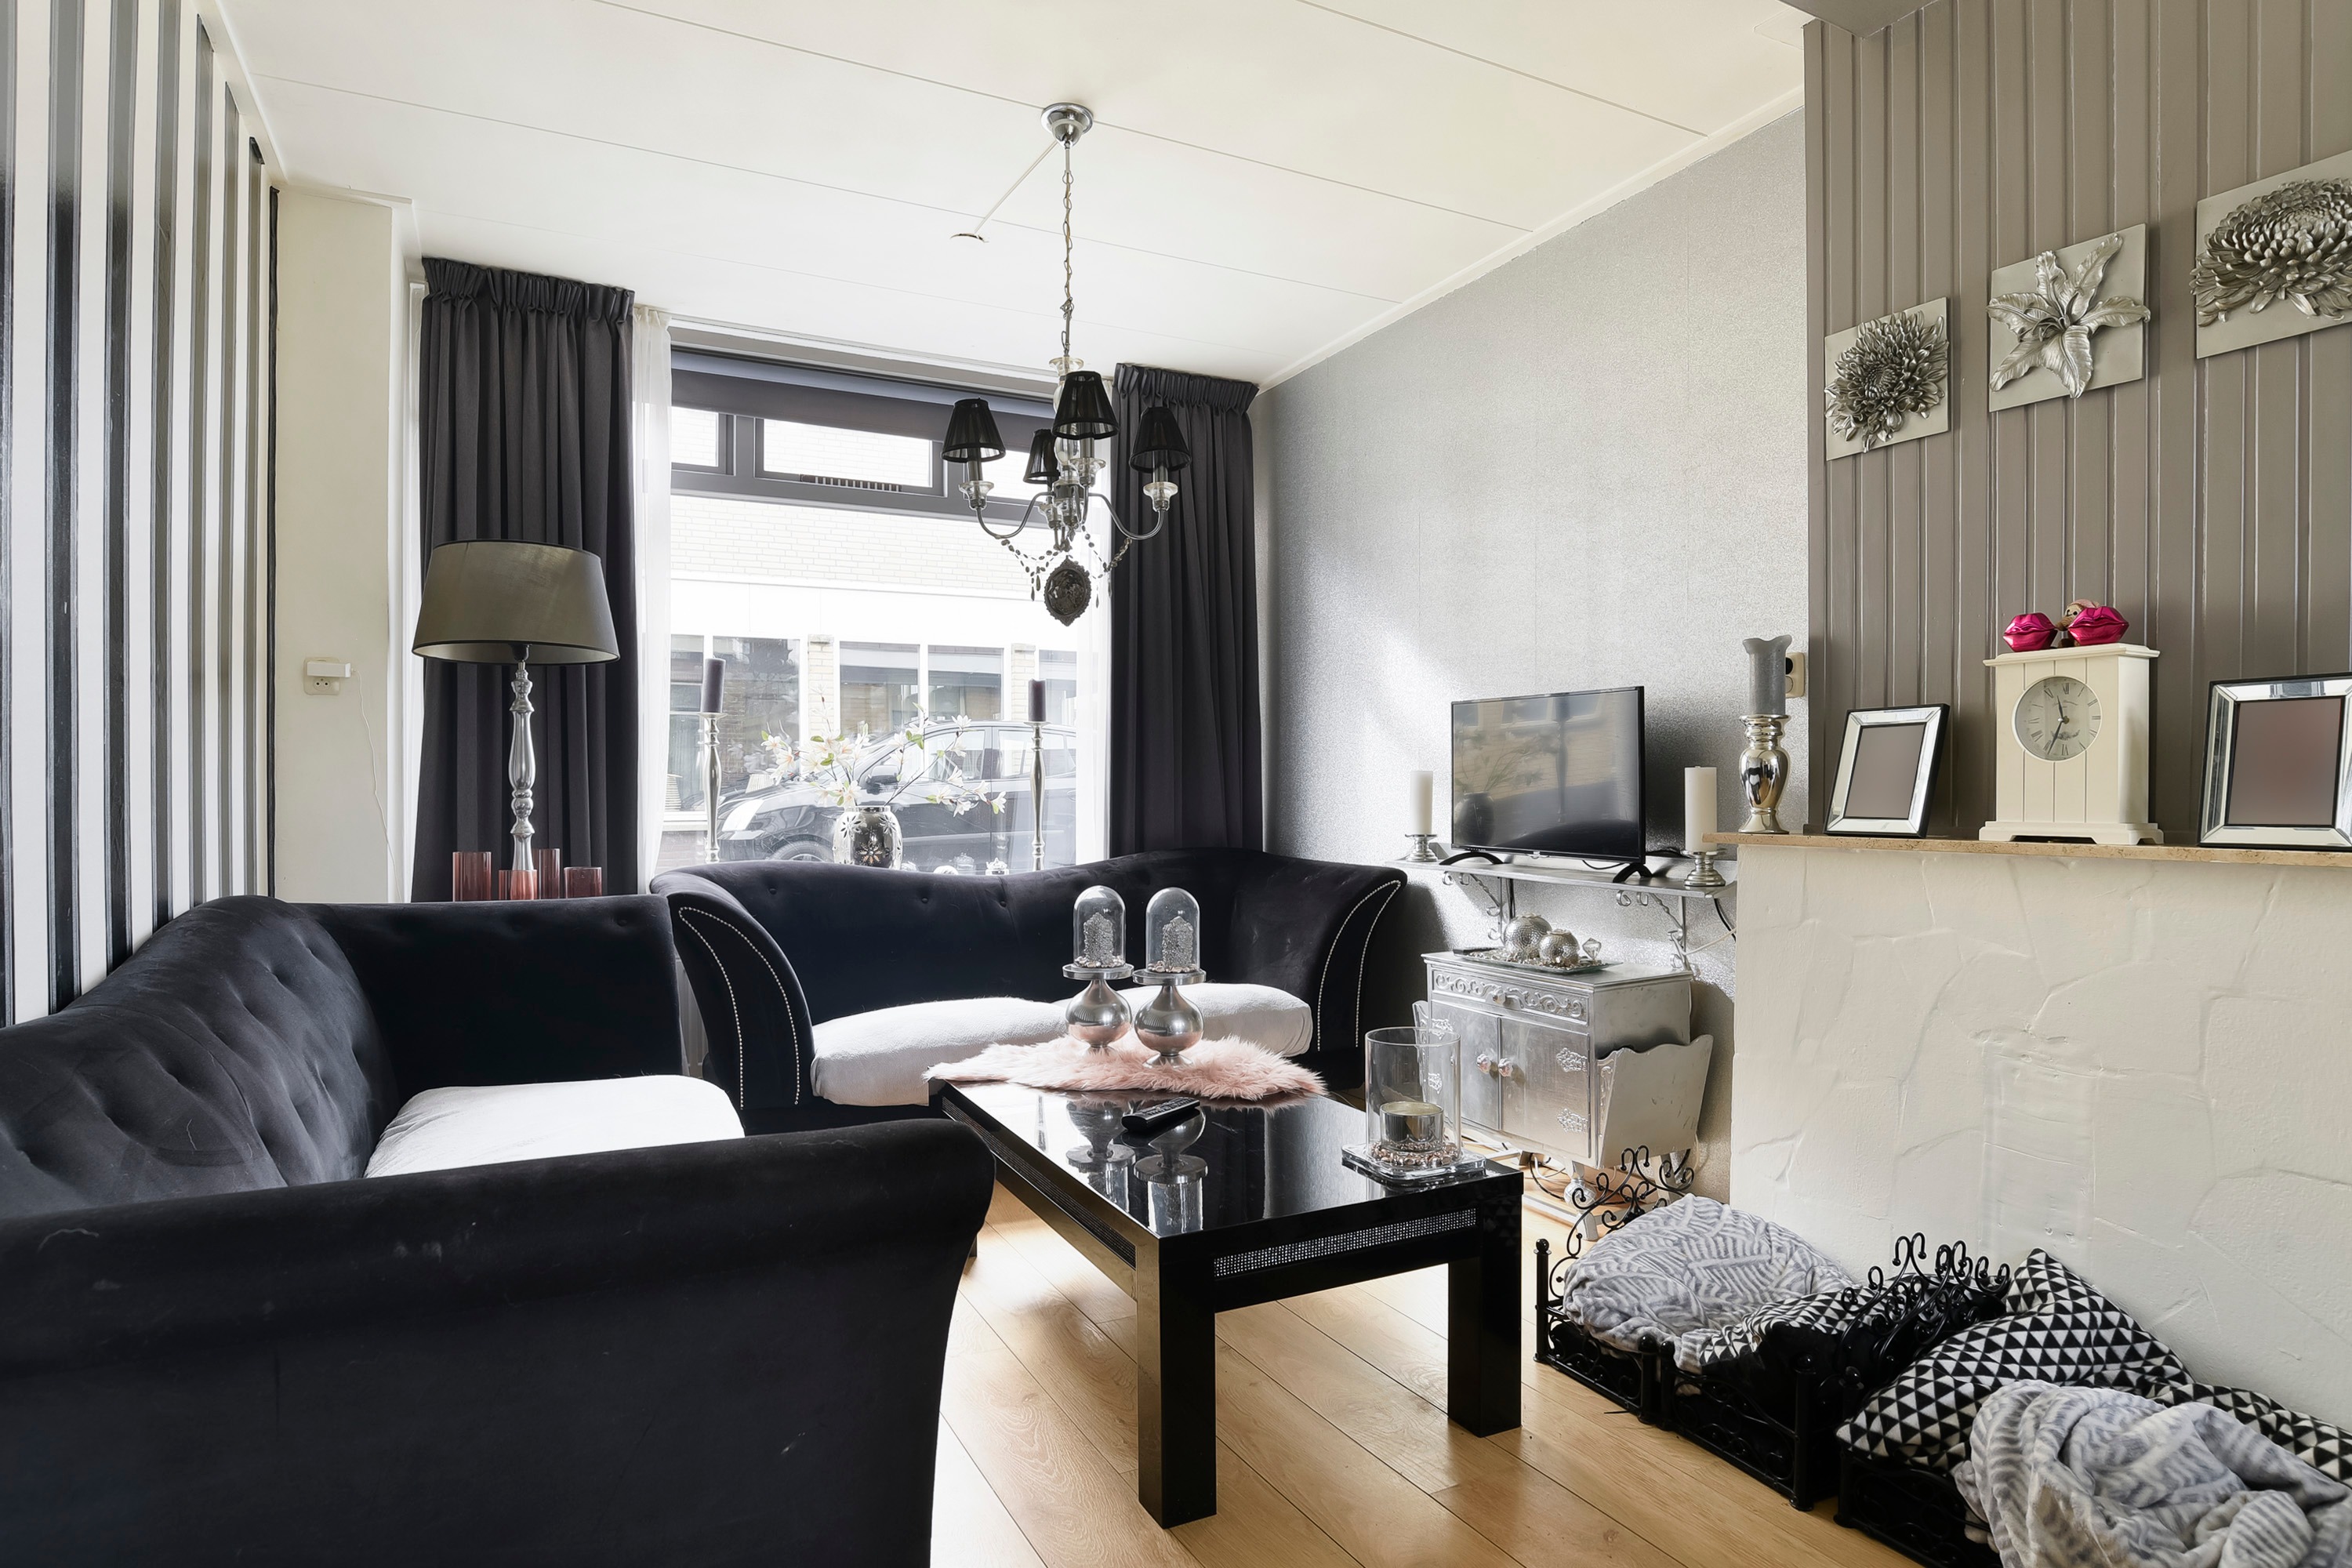 Woning / appartement - Den Helder - 